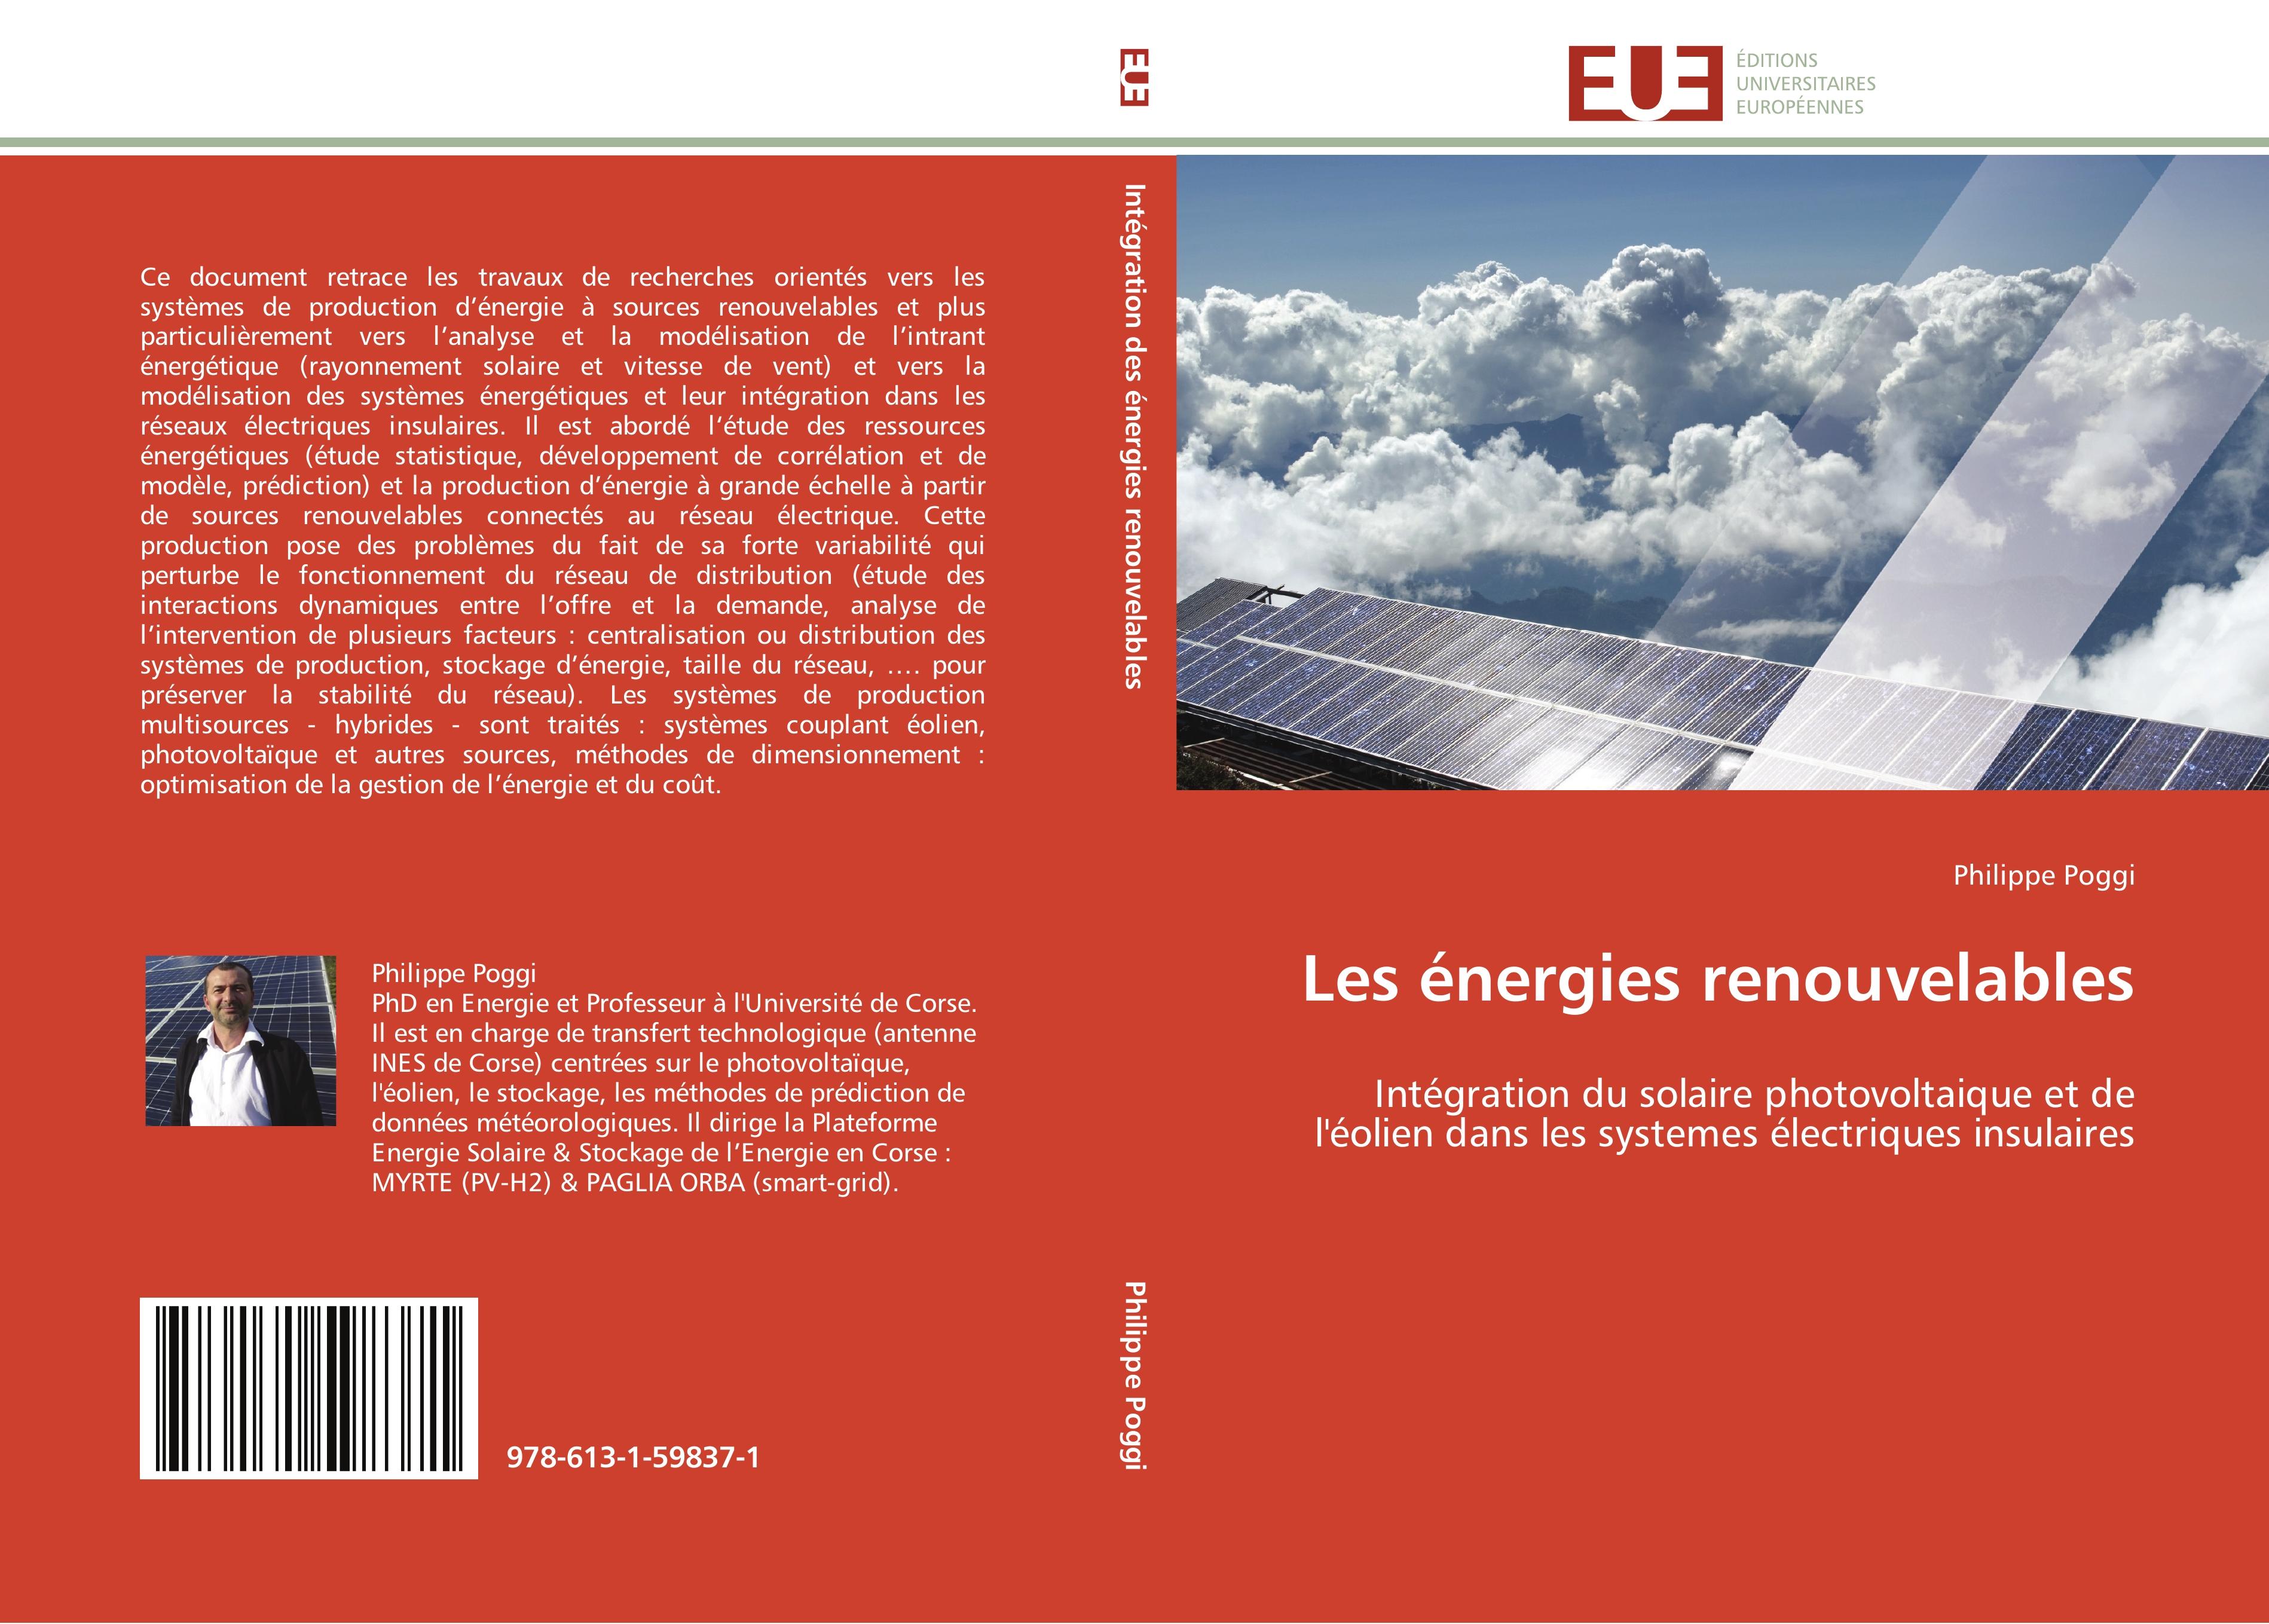 Les énergies renouvelables - Philippe Poggi